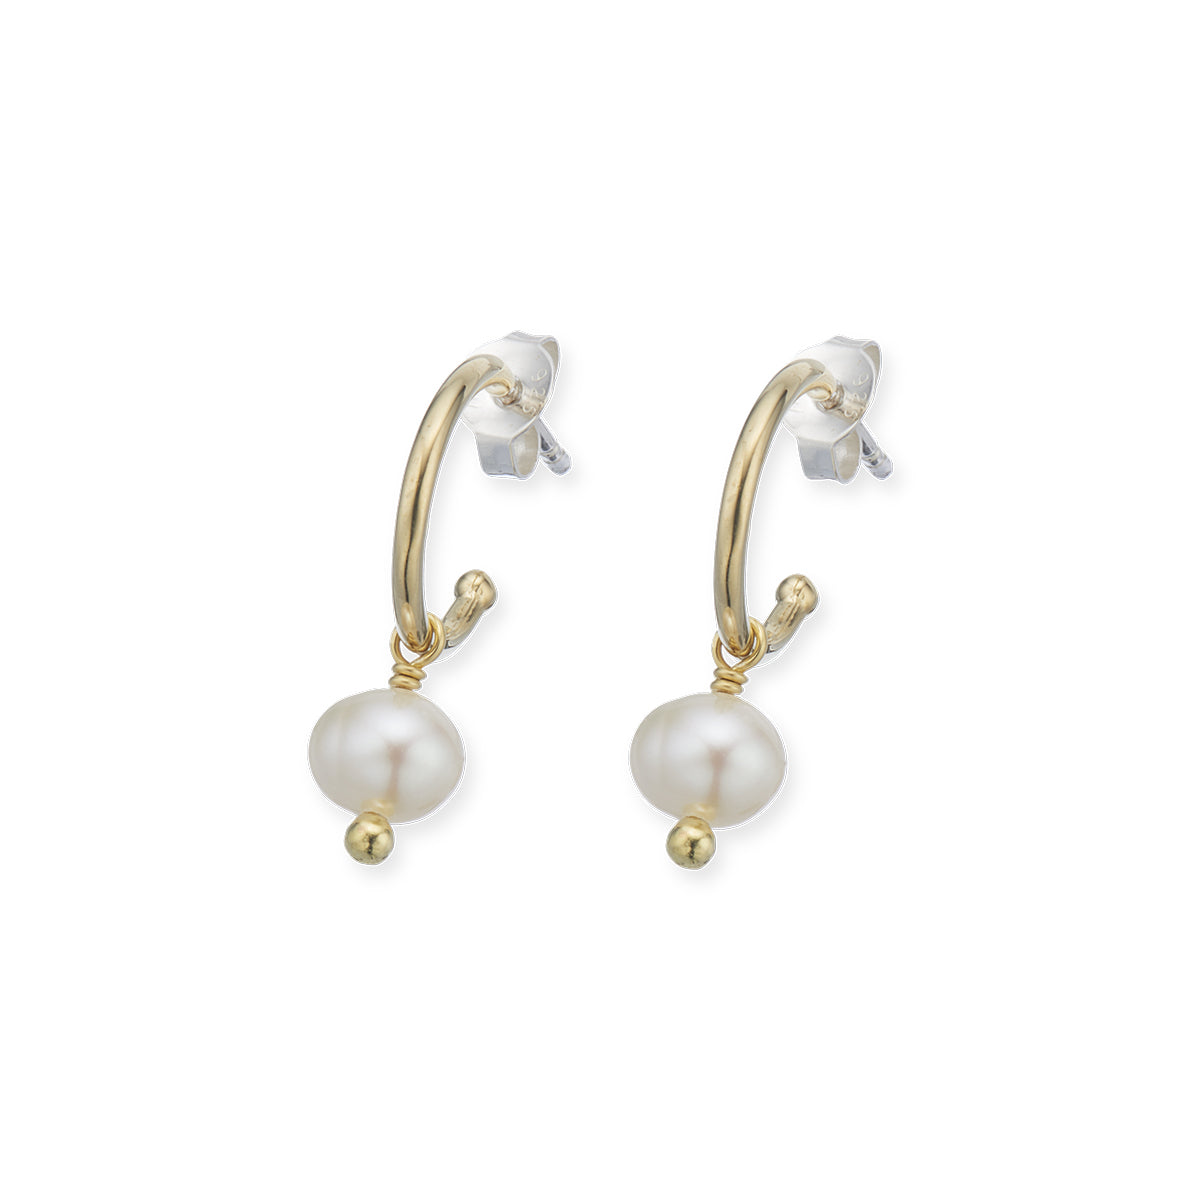 Prosperity pearl hoop earrings